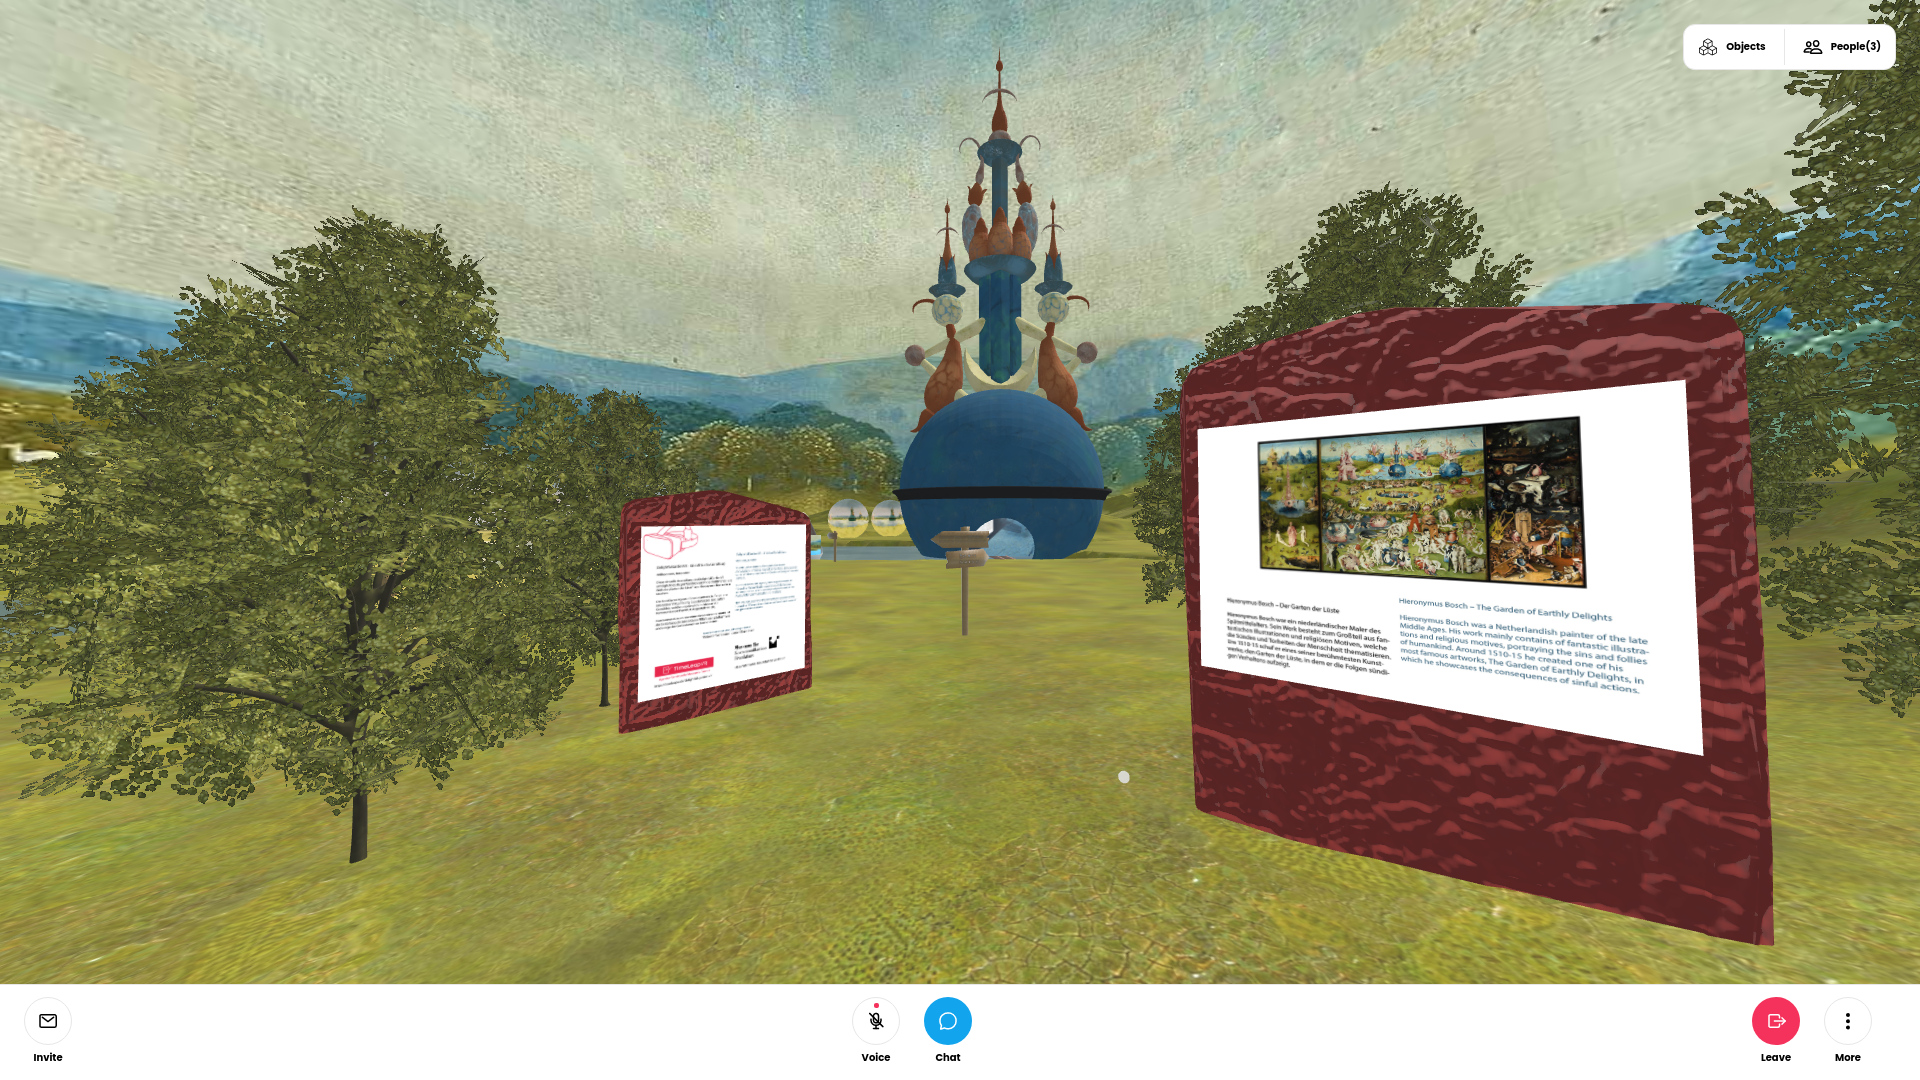 Virtuelle Ausstellungsansicht in den "Garten der Lüste" von Hieronymus Bosch. Zwei Wände zeigen Text und Bild  der Ausstellung.